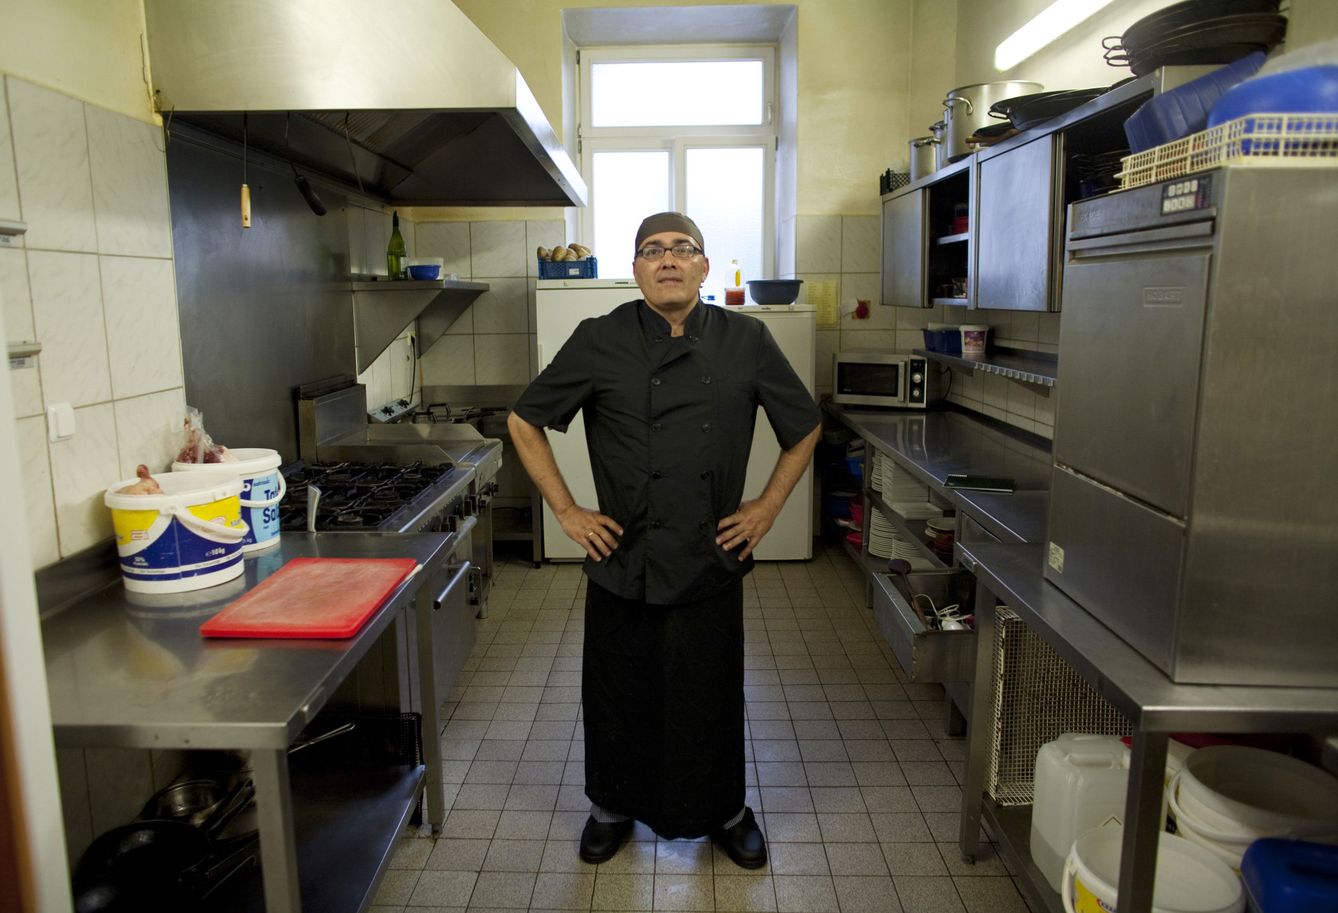 El español José Manuel Abel posa para la cámara en su primer día como asistente de cocina en Múnich (Reuters).